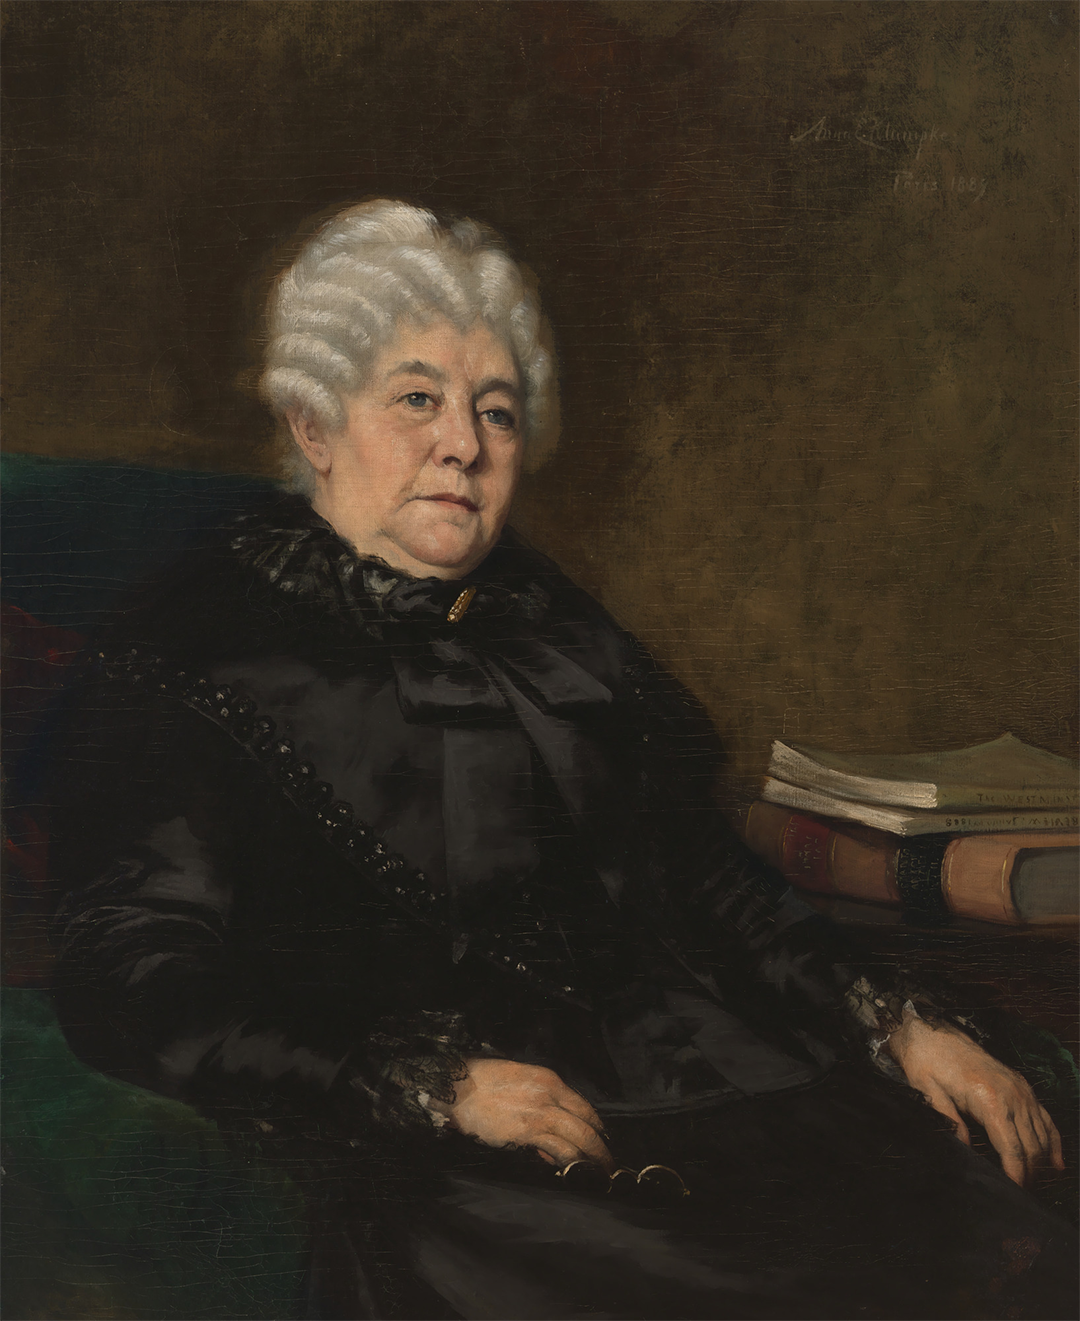 Elizabeth Cady Stanton, Architect of Women's Suffrage